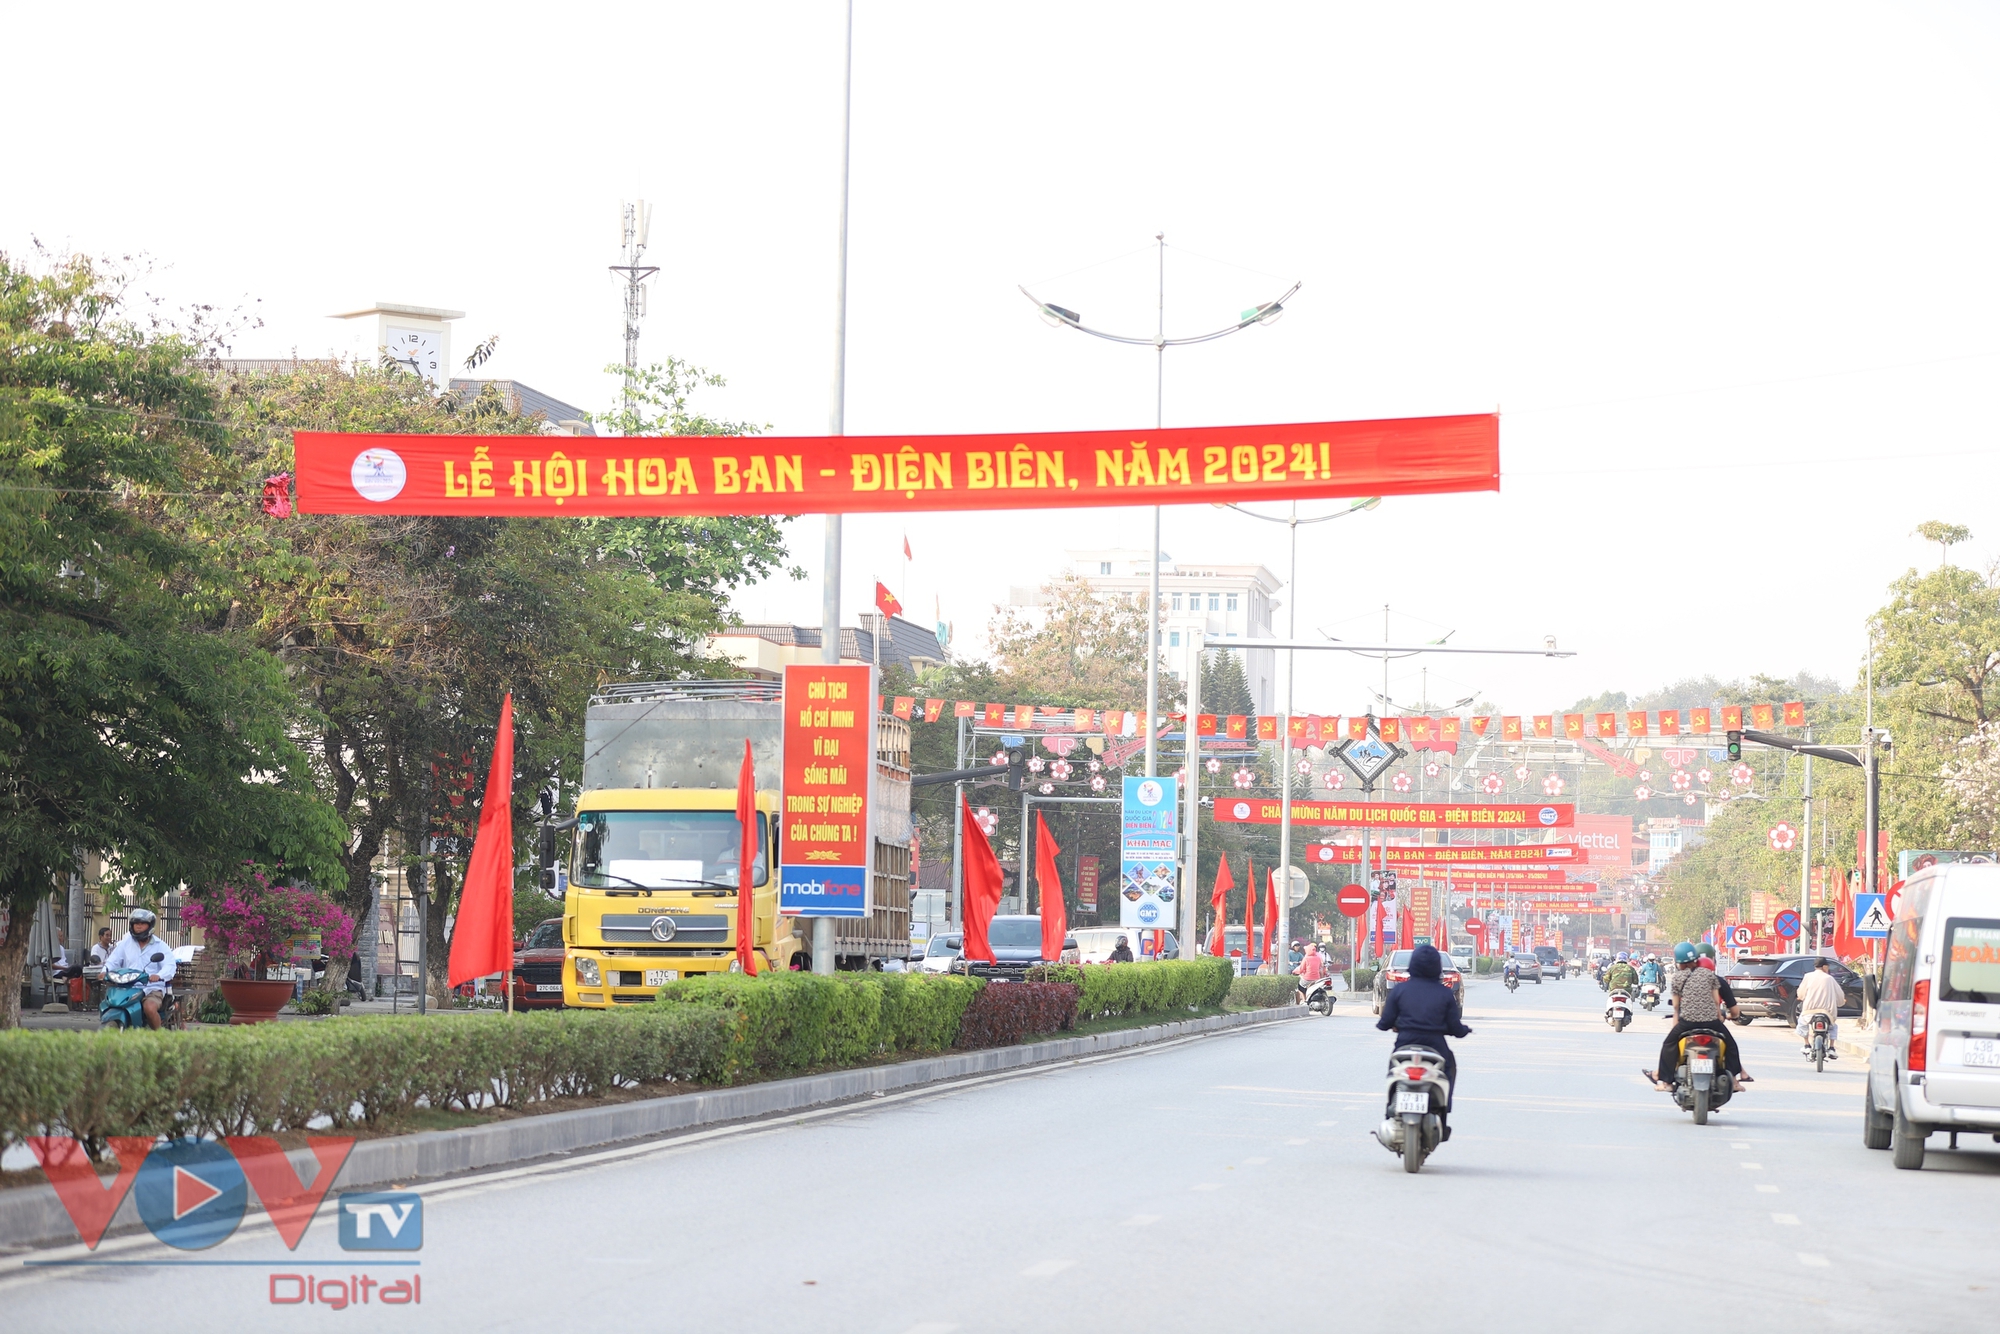 Điện Biên rực rỡ cờ hoa, khách du lịch hào hứng chào đón khai mạc năm Du lịch Quốc gia 2024- Ảnh 5.